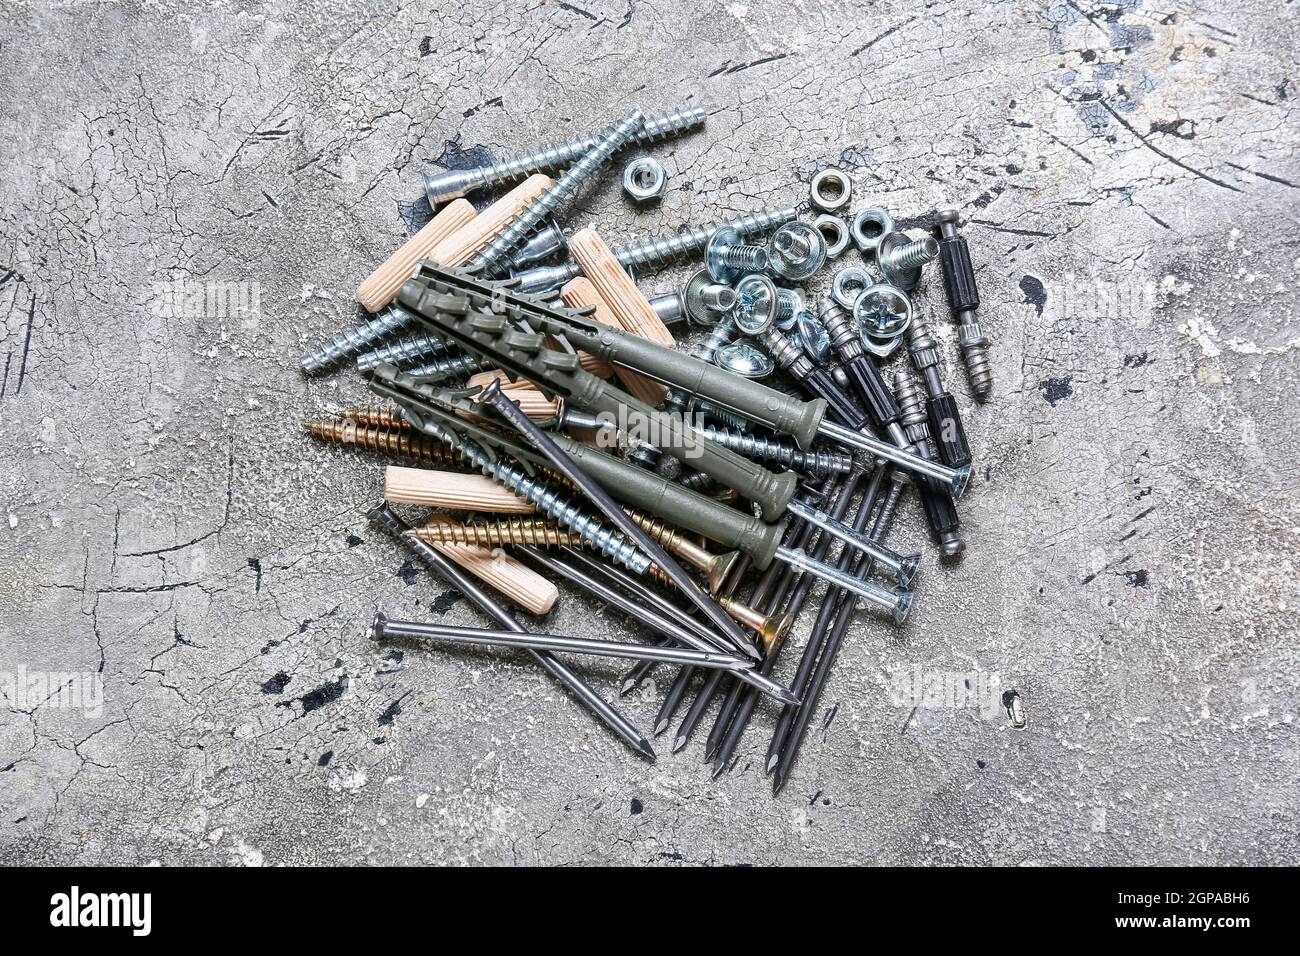 Stapel von verschiedenen Muttern, Schrauben, Schrauben, Nägeln und Dübel  auf grunge Hintergrund Stockfotografie - Alamy